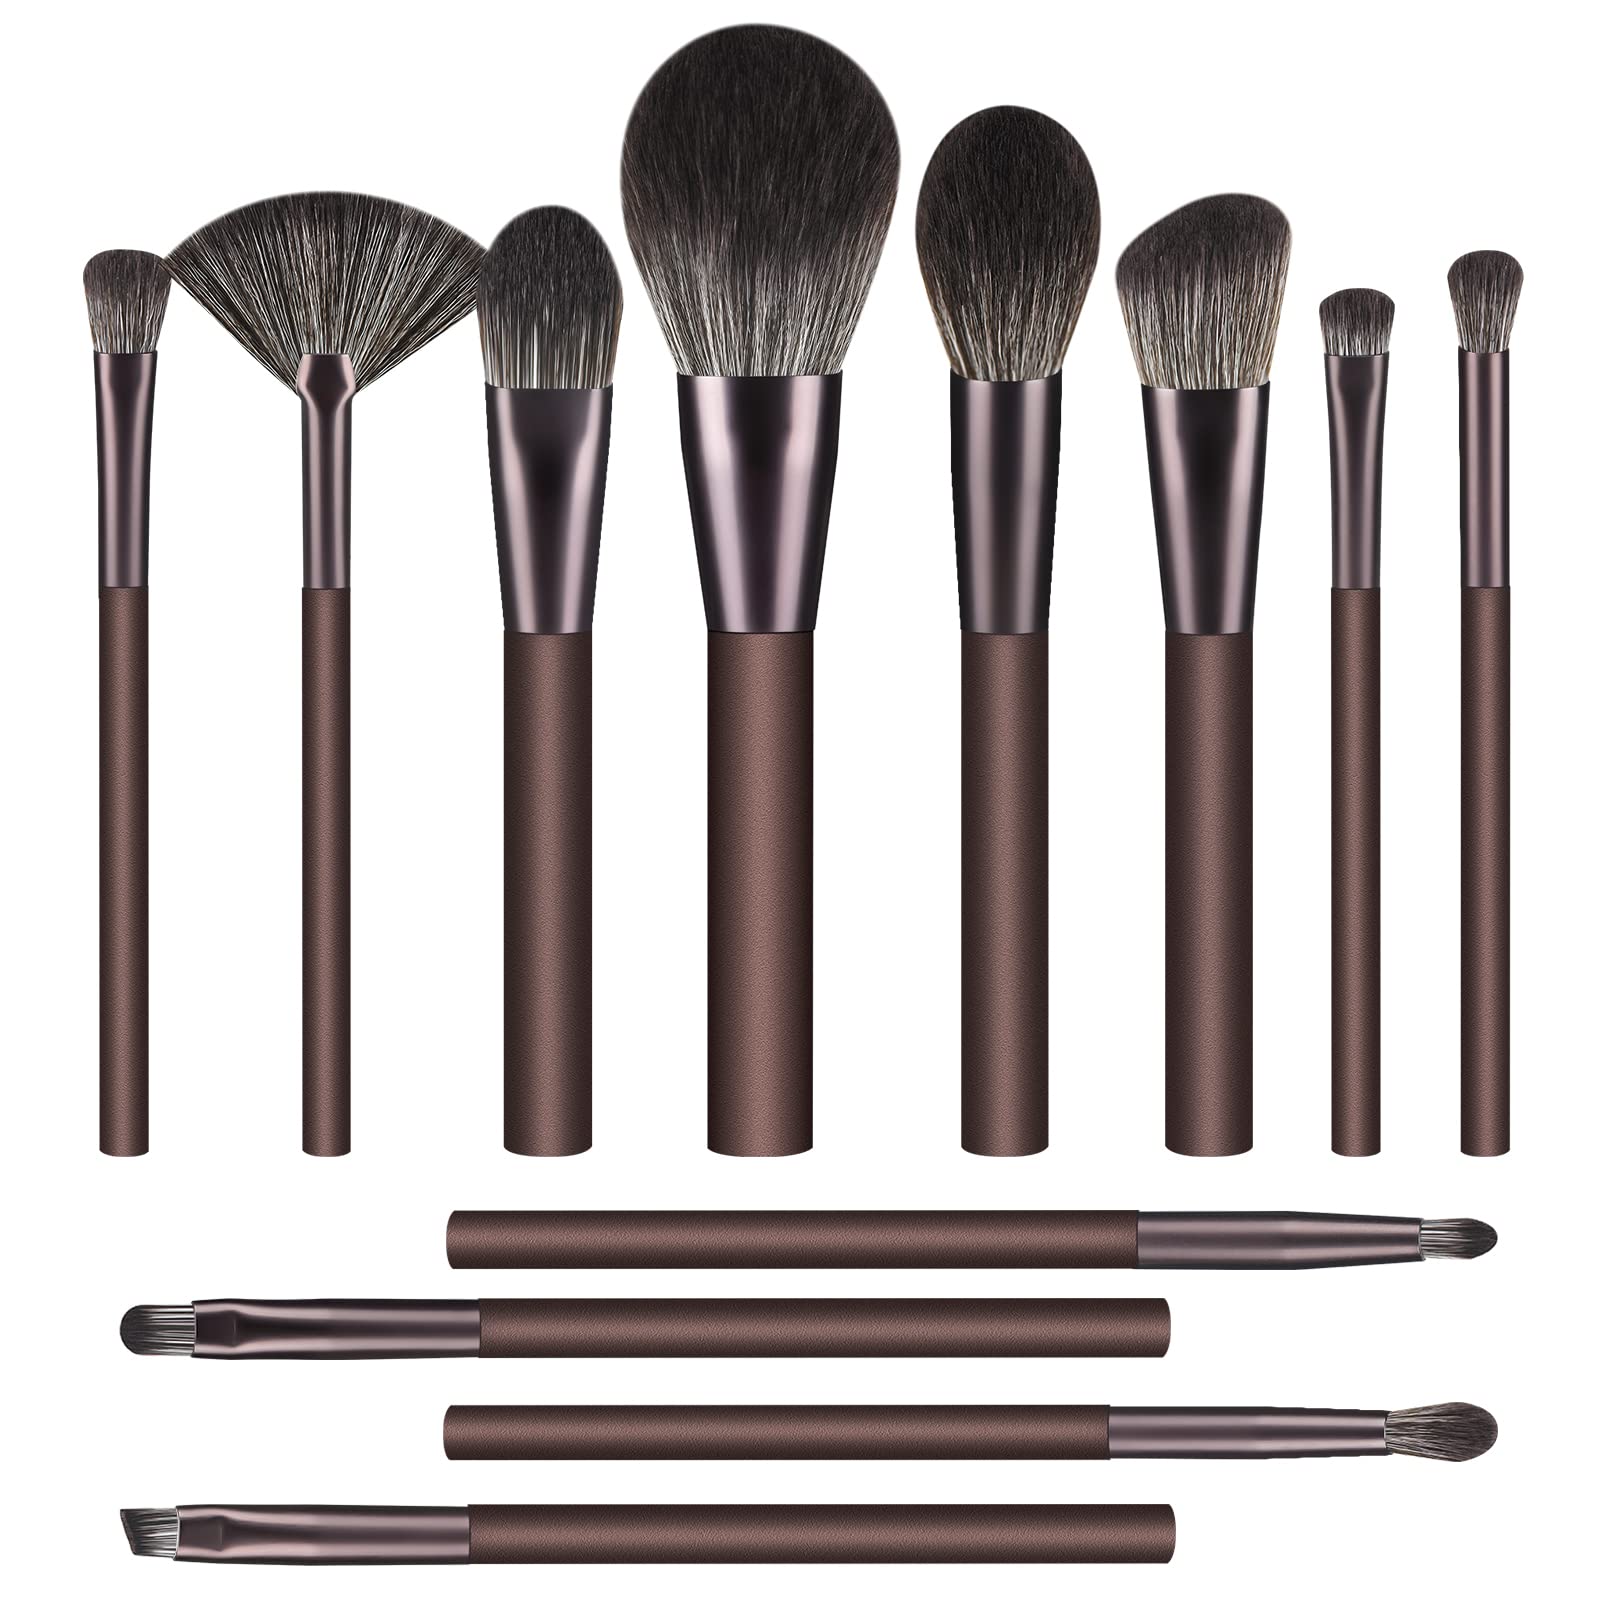 Duaiu Makeup Brushes Set 12pcs